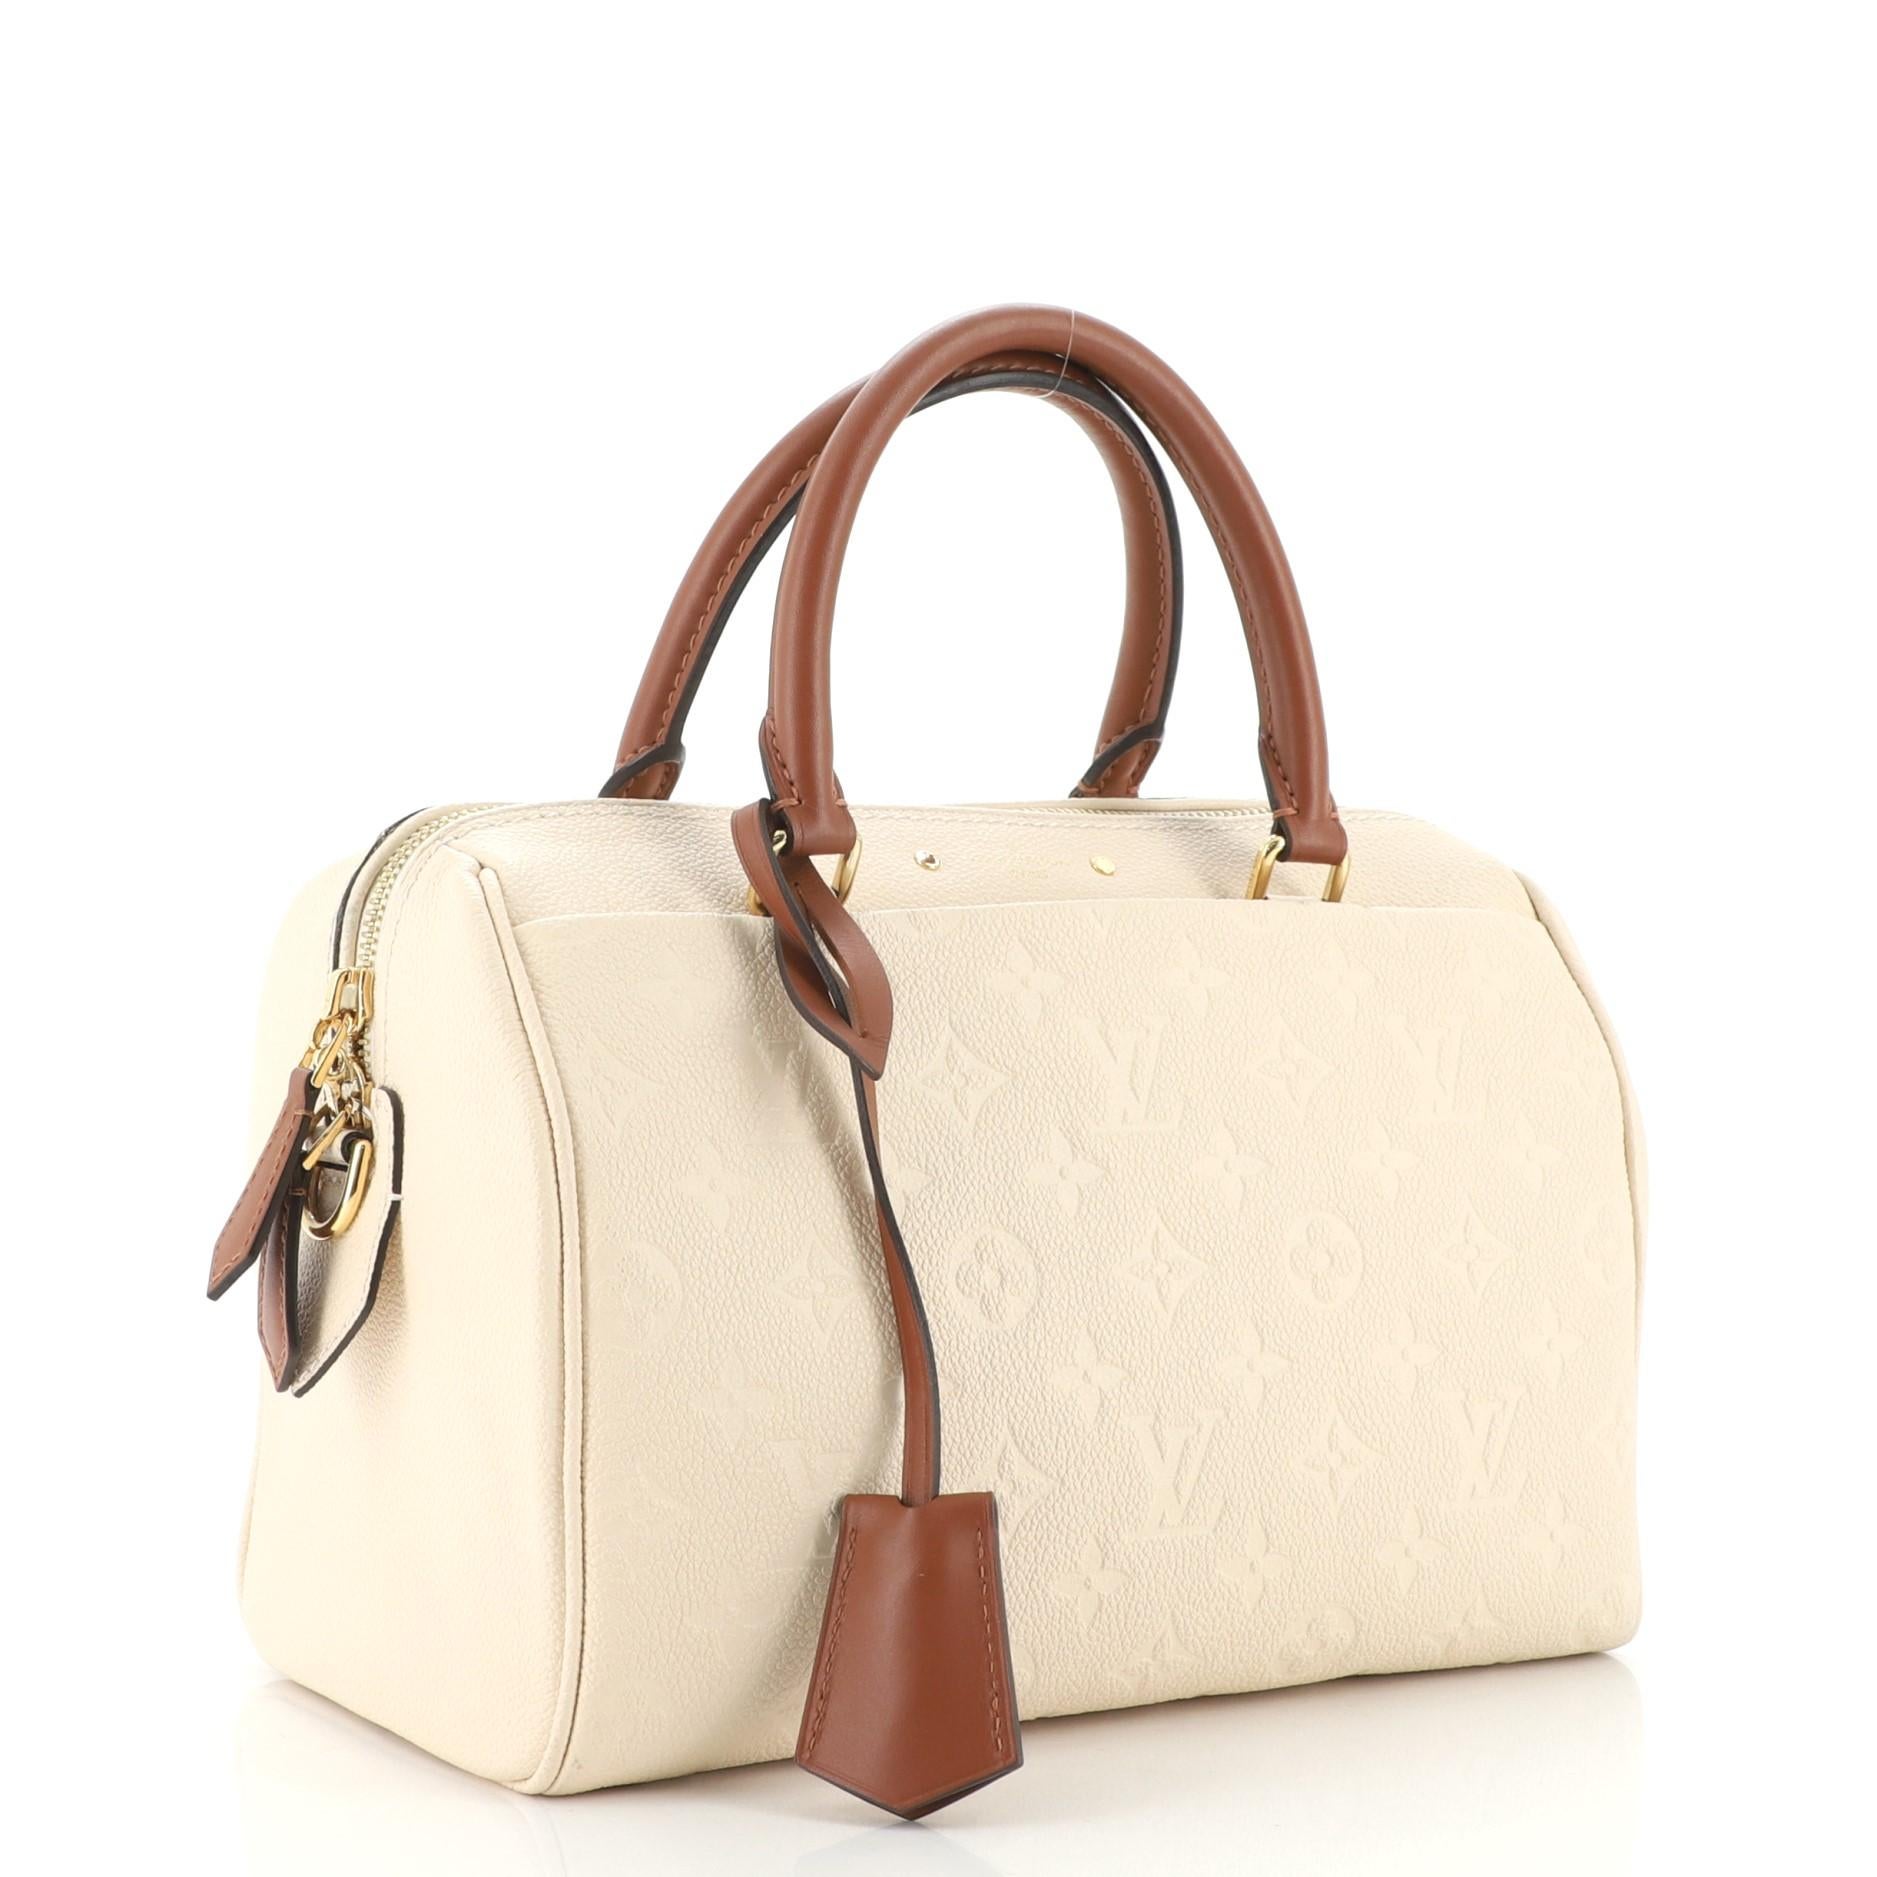 Beige Louis Vuitton Speedy Bandouliere NM Bag Monogram Empreinte Leather 25